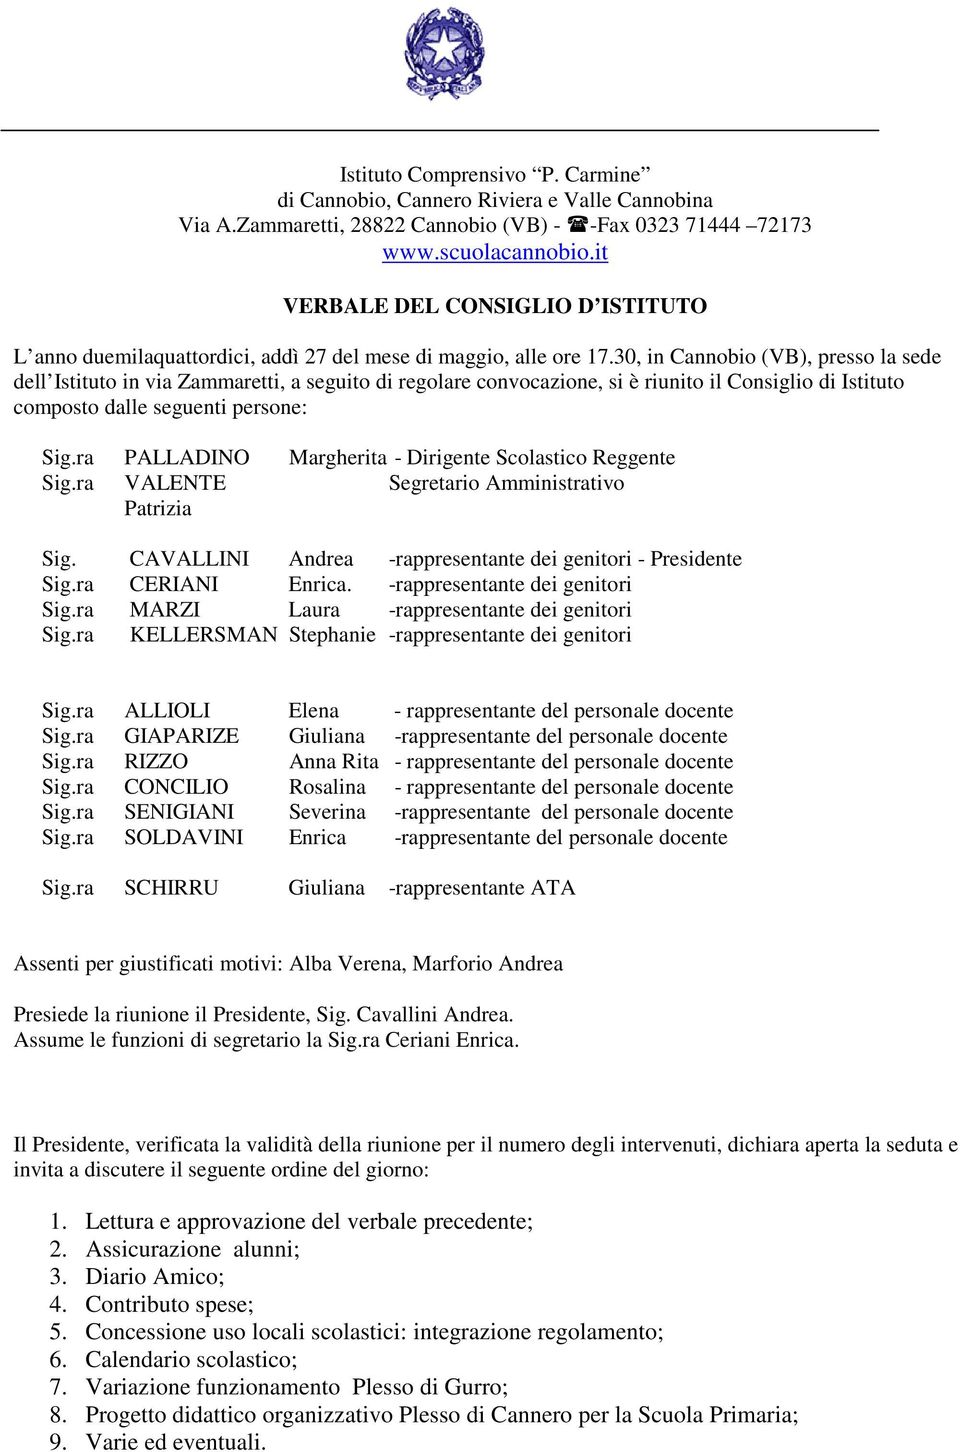 30, in Cannobio (VB), presso la sede dell Istituto in via Zammaretti, a seguito di regolare convocazione, si è riunito il Consiglio di Istituto composto dalle seguenti persone: PALLADINO VALENTE